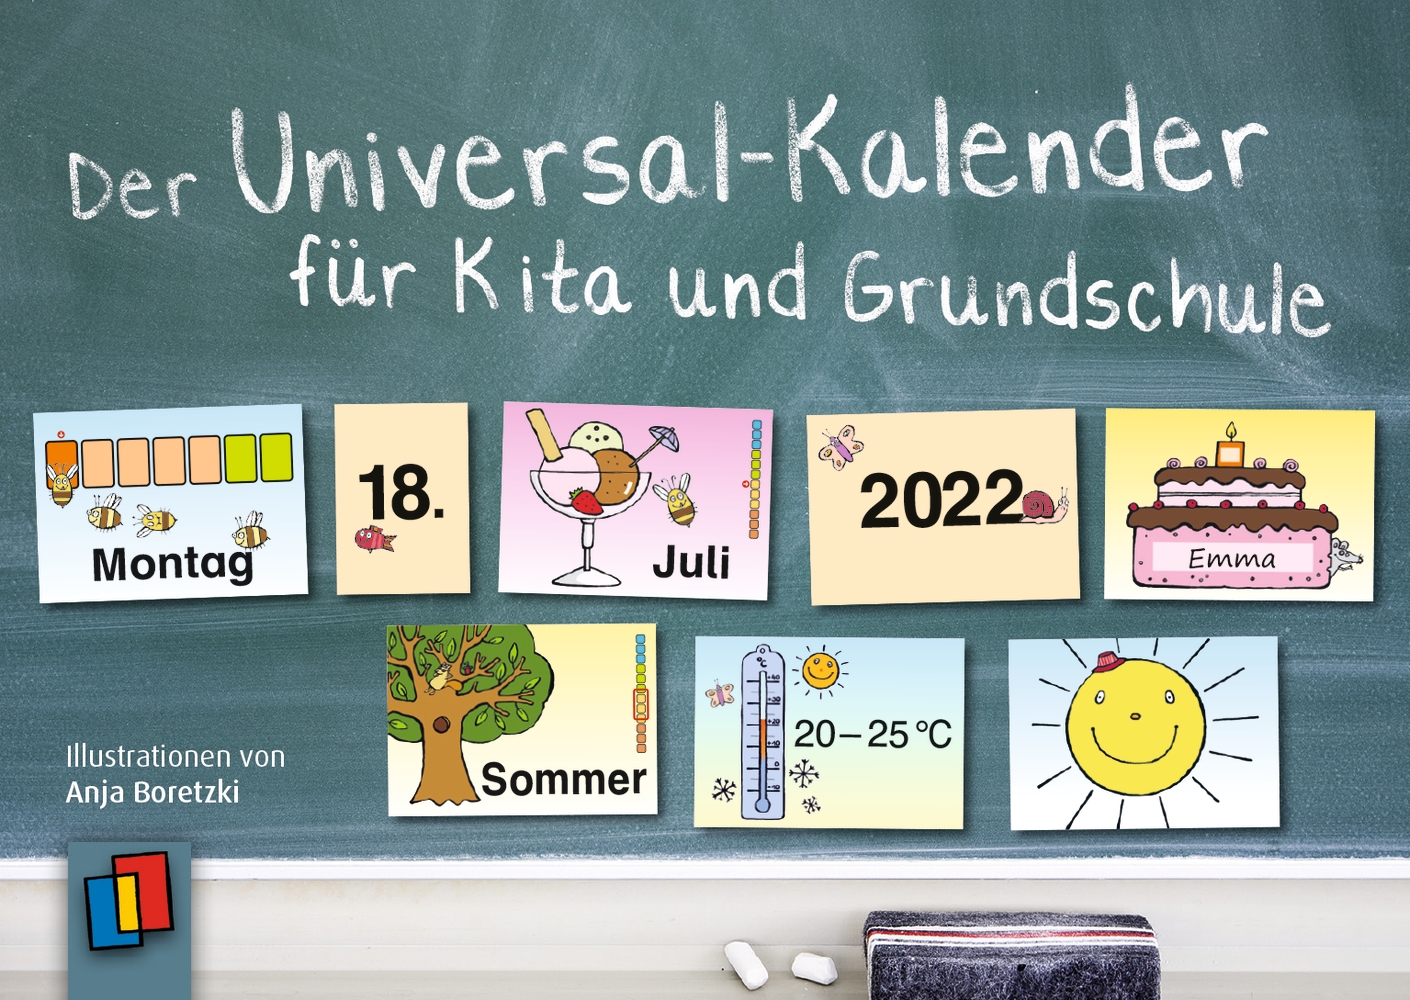 Der Universal-Kalender für Kita und Grundschule